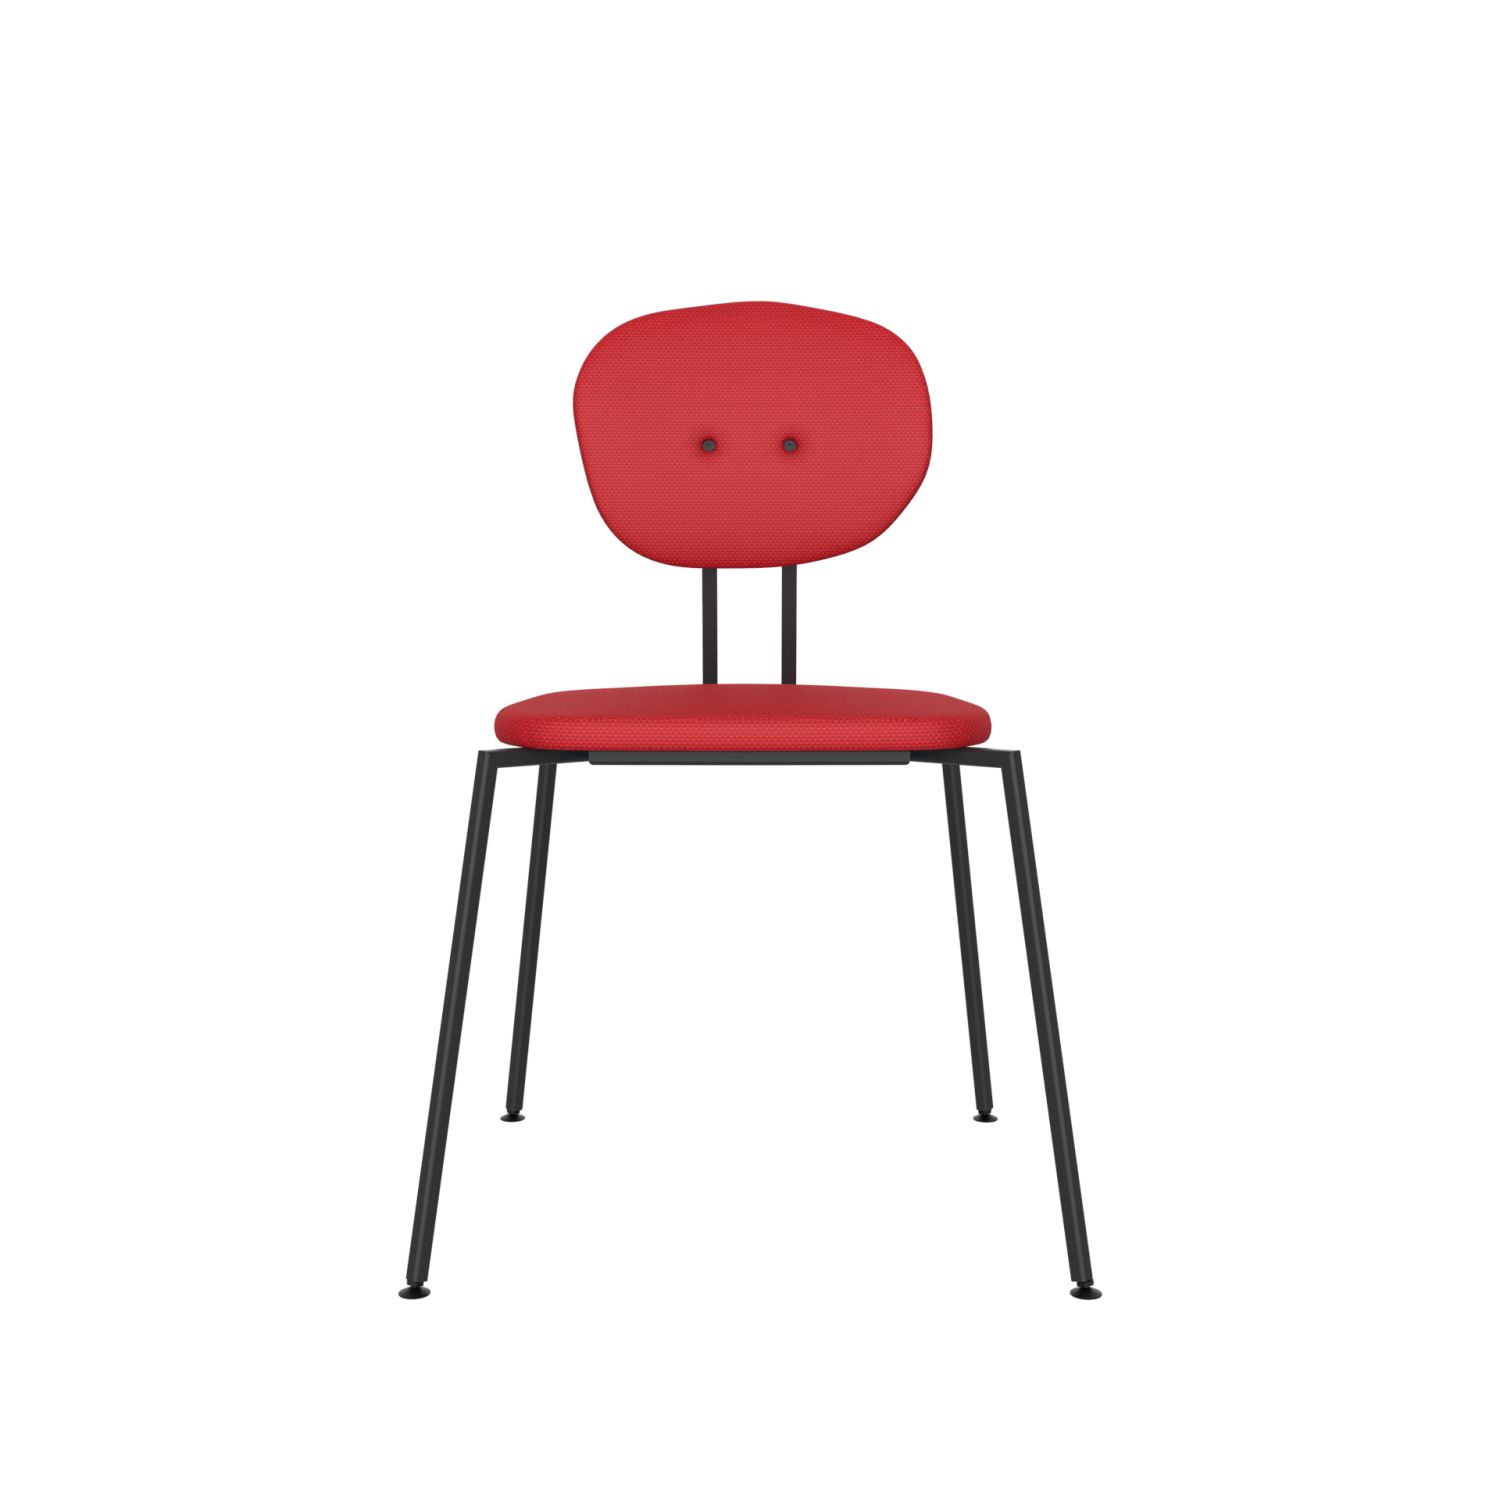 lensvelt maarten baas chair 141 stackable without armrests backrest a grenada red 010 black ral9005 hard leg ends